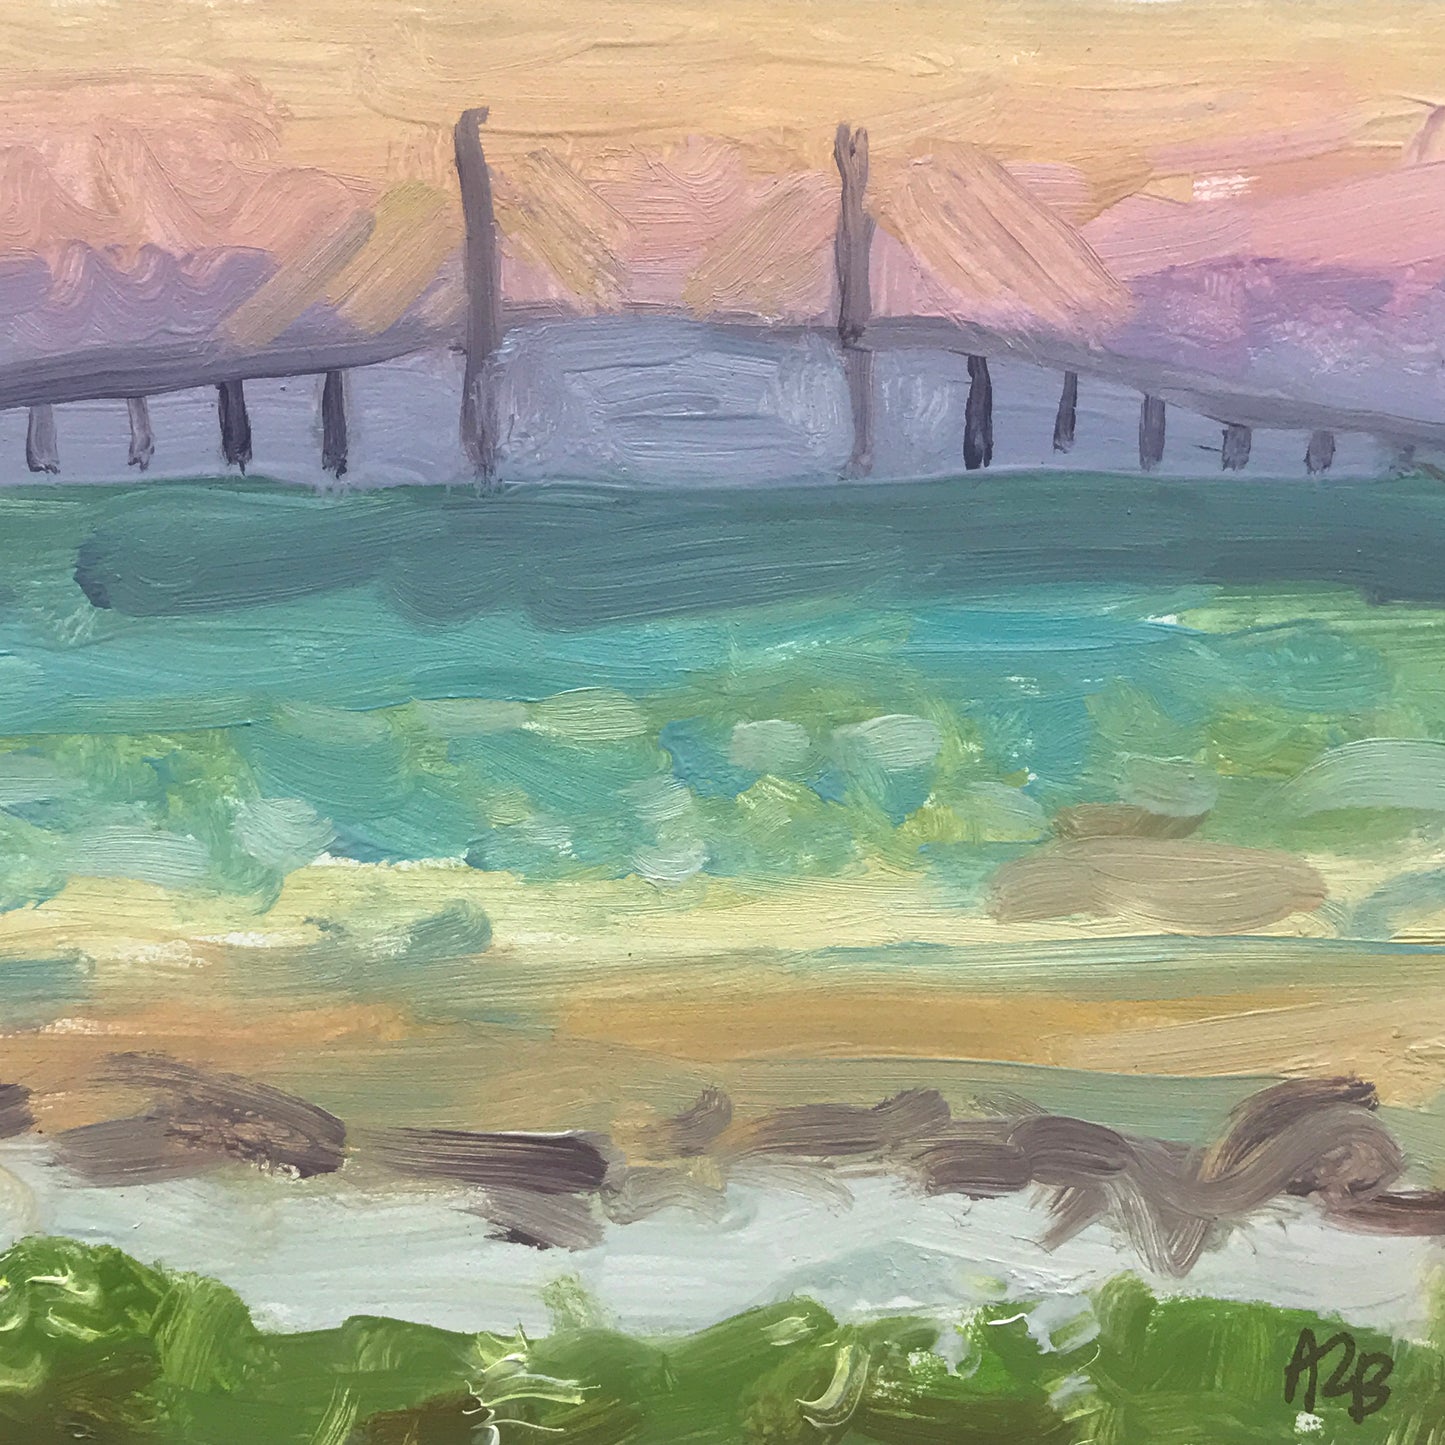 The Bridge At Sunset, Framed, Oil on Panel